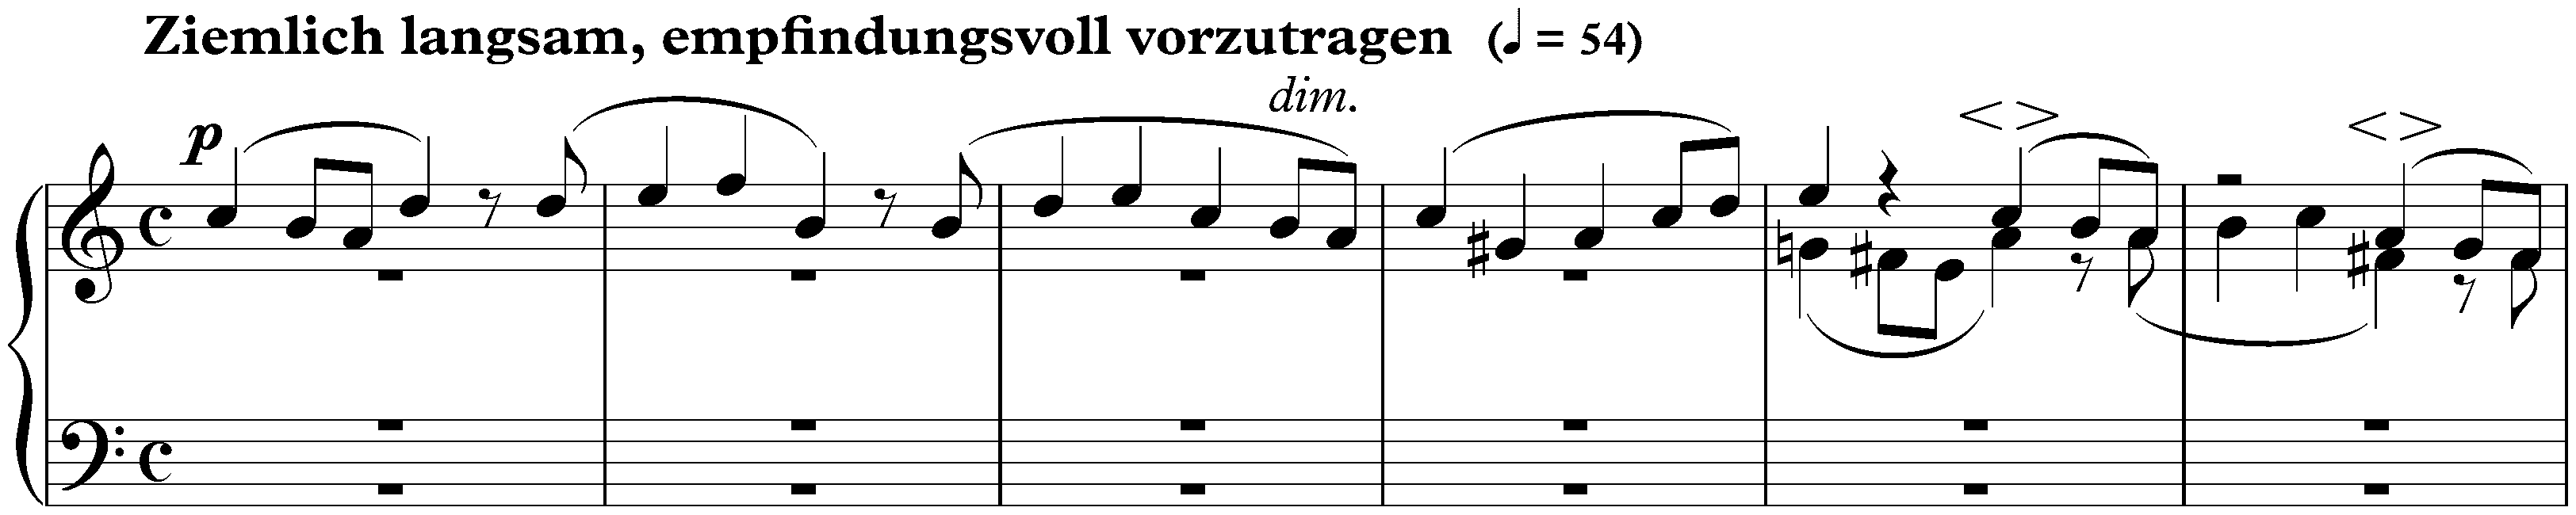 Sieben Stücke in Fughettenform, op. 126; 5. Ziemlich langsam, empfindungsvoll vorzutragen